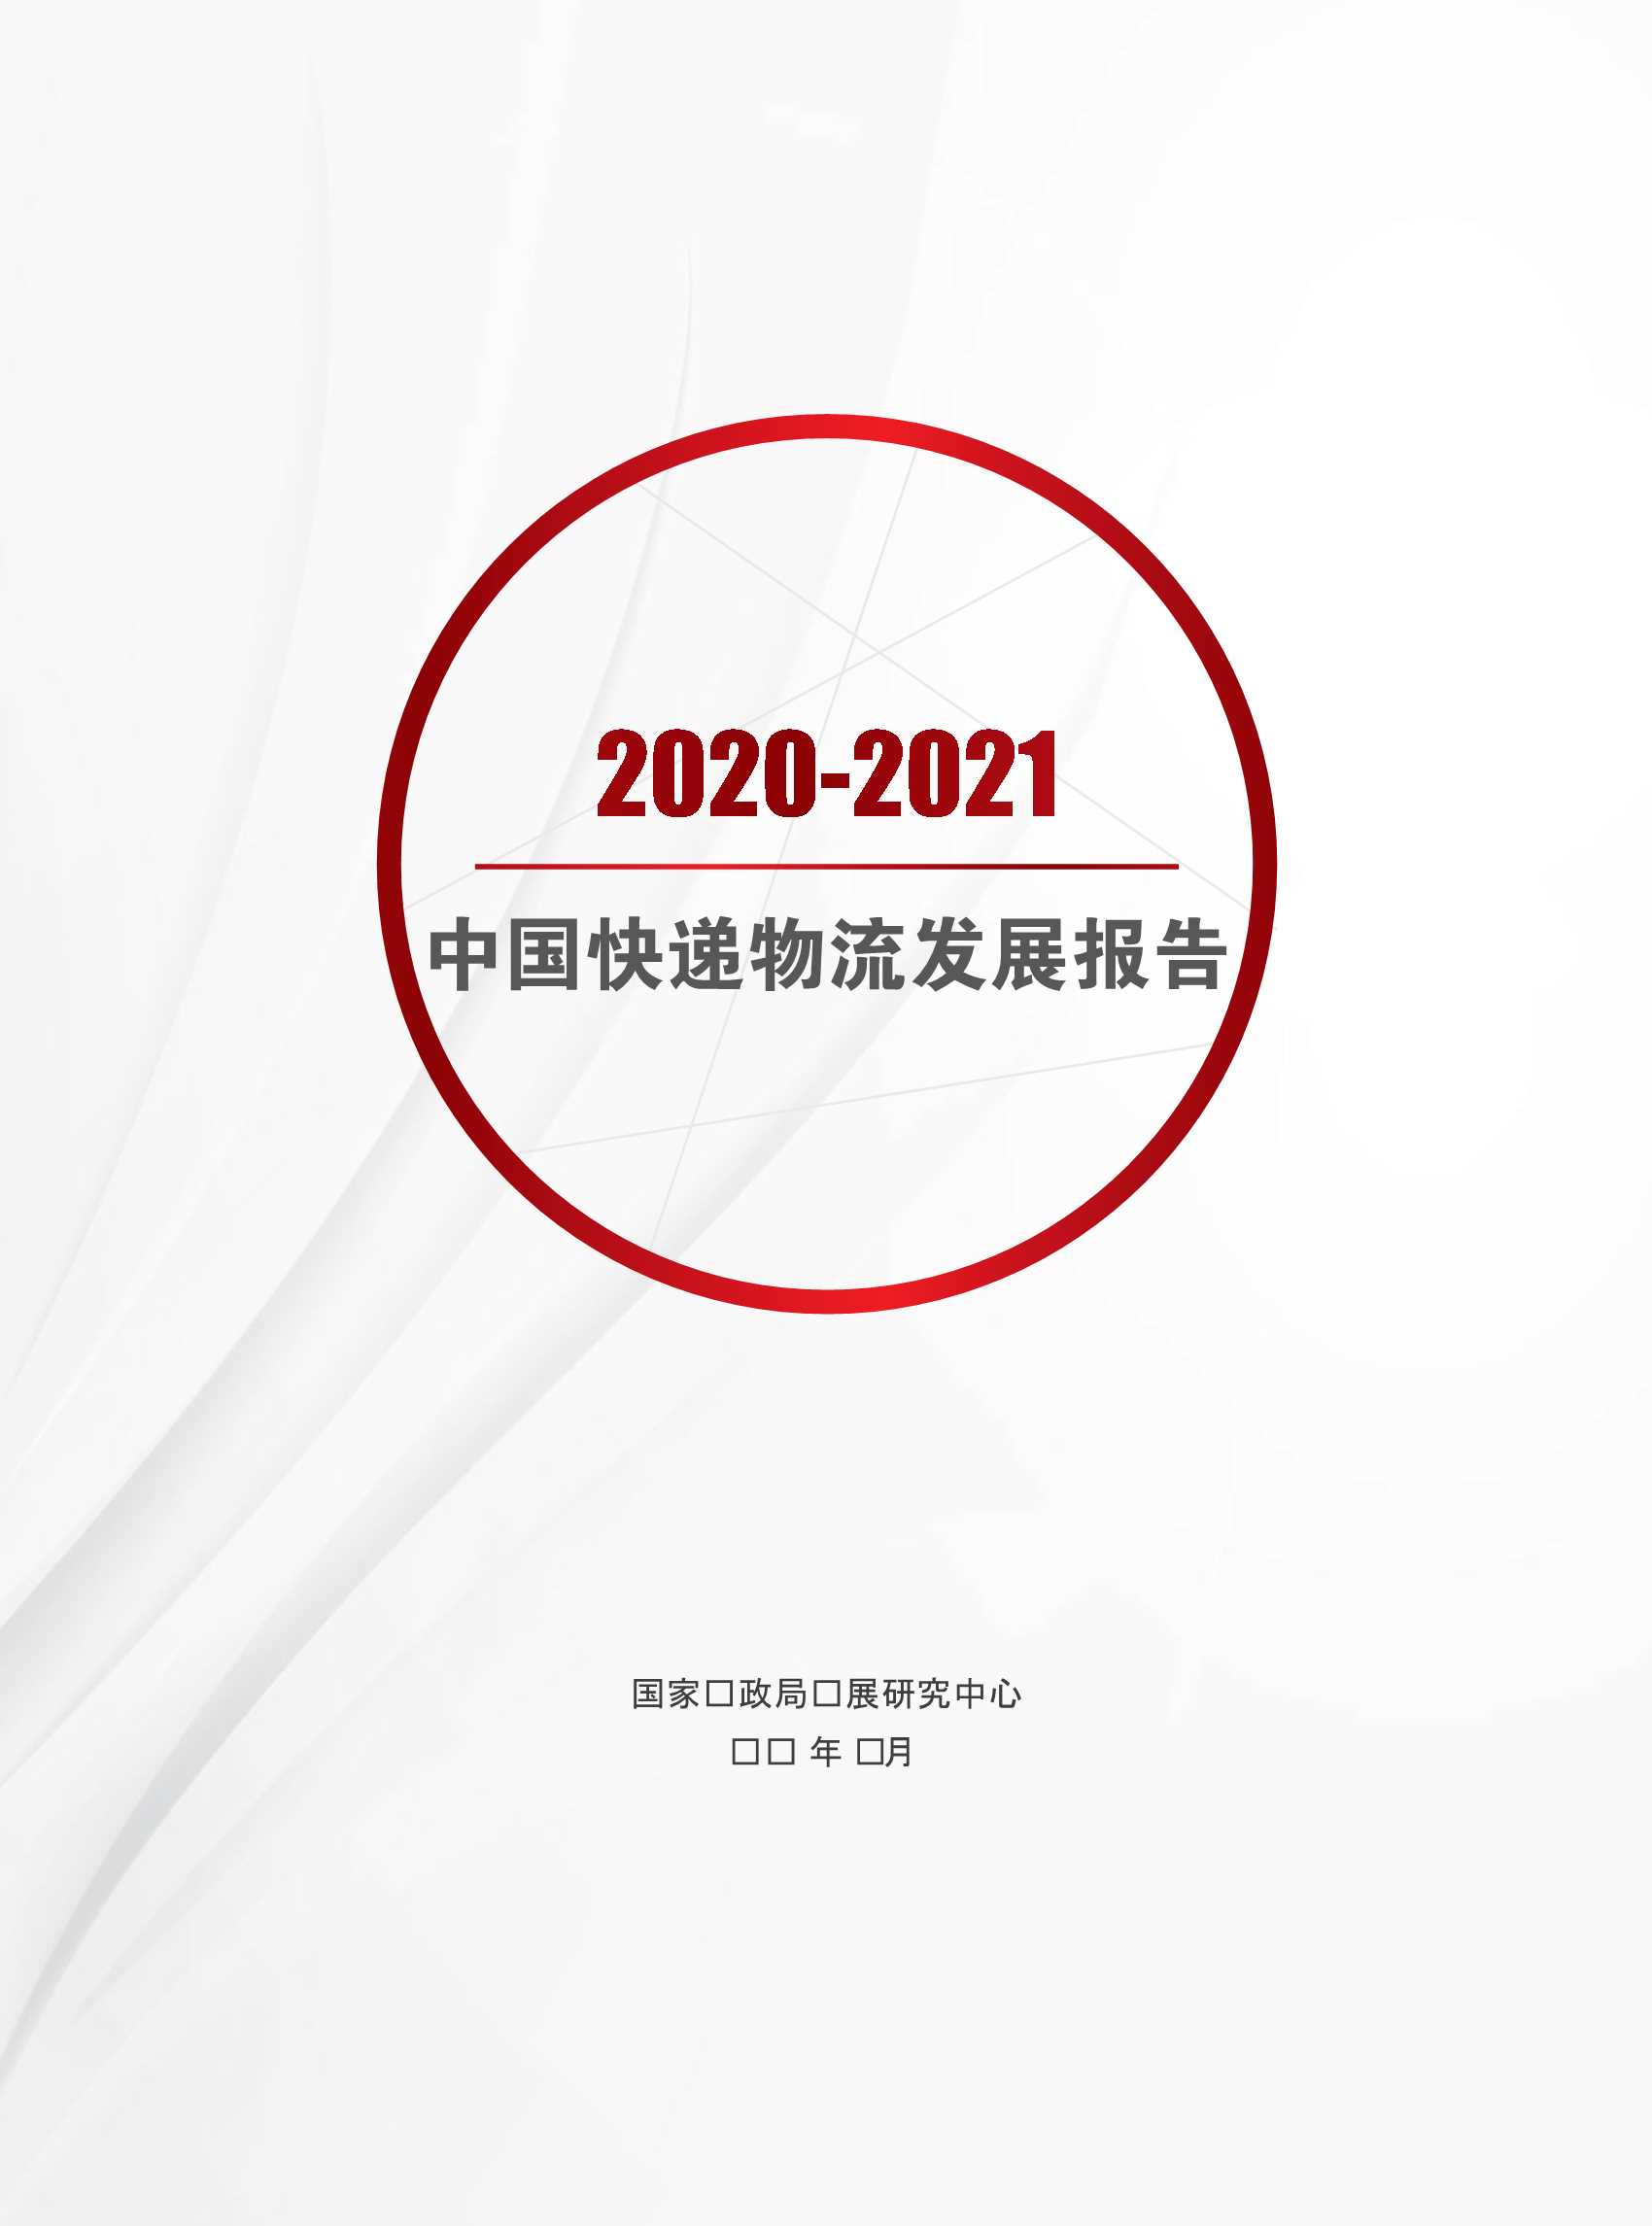 2020-2021中国快递物流发展报告-2021.10-20页